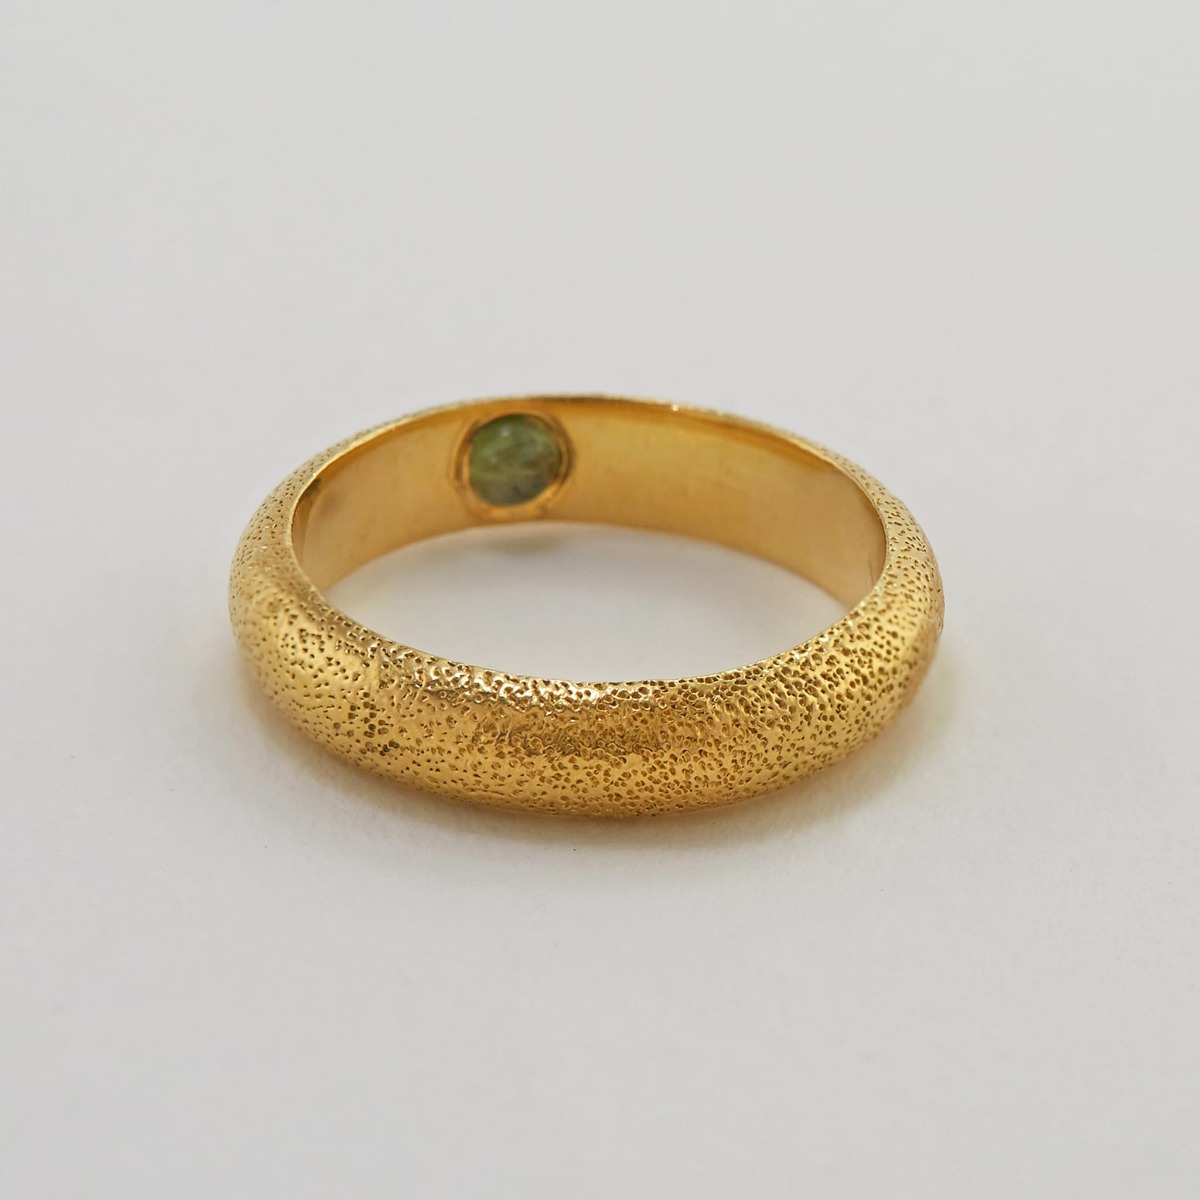 Paper shot of Hans D-Shape Hidden Green Tourmaline Ring by Alex Monroe Jewellery